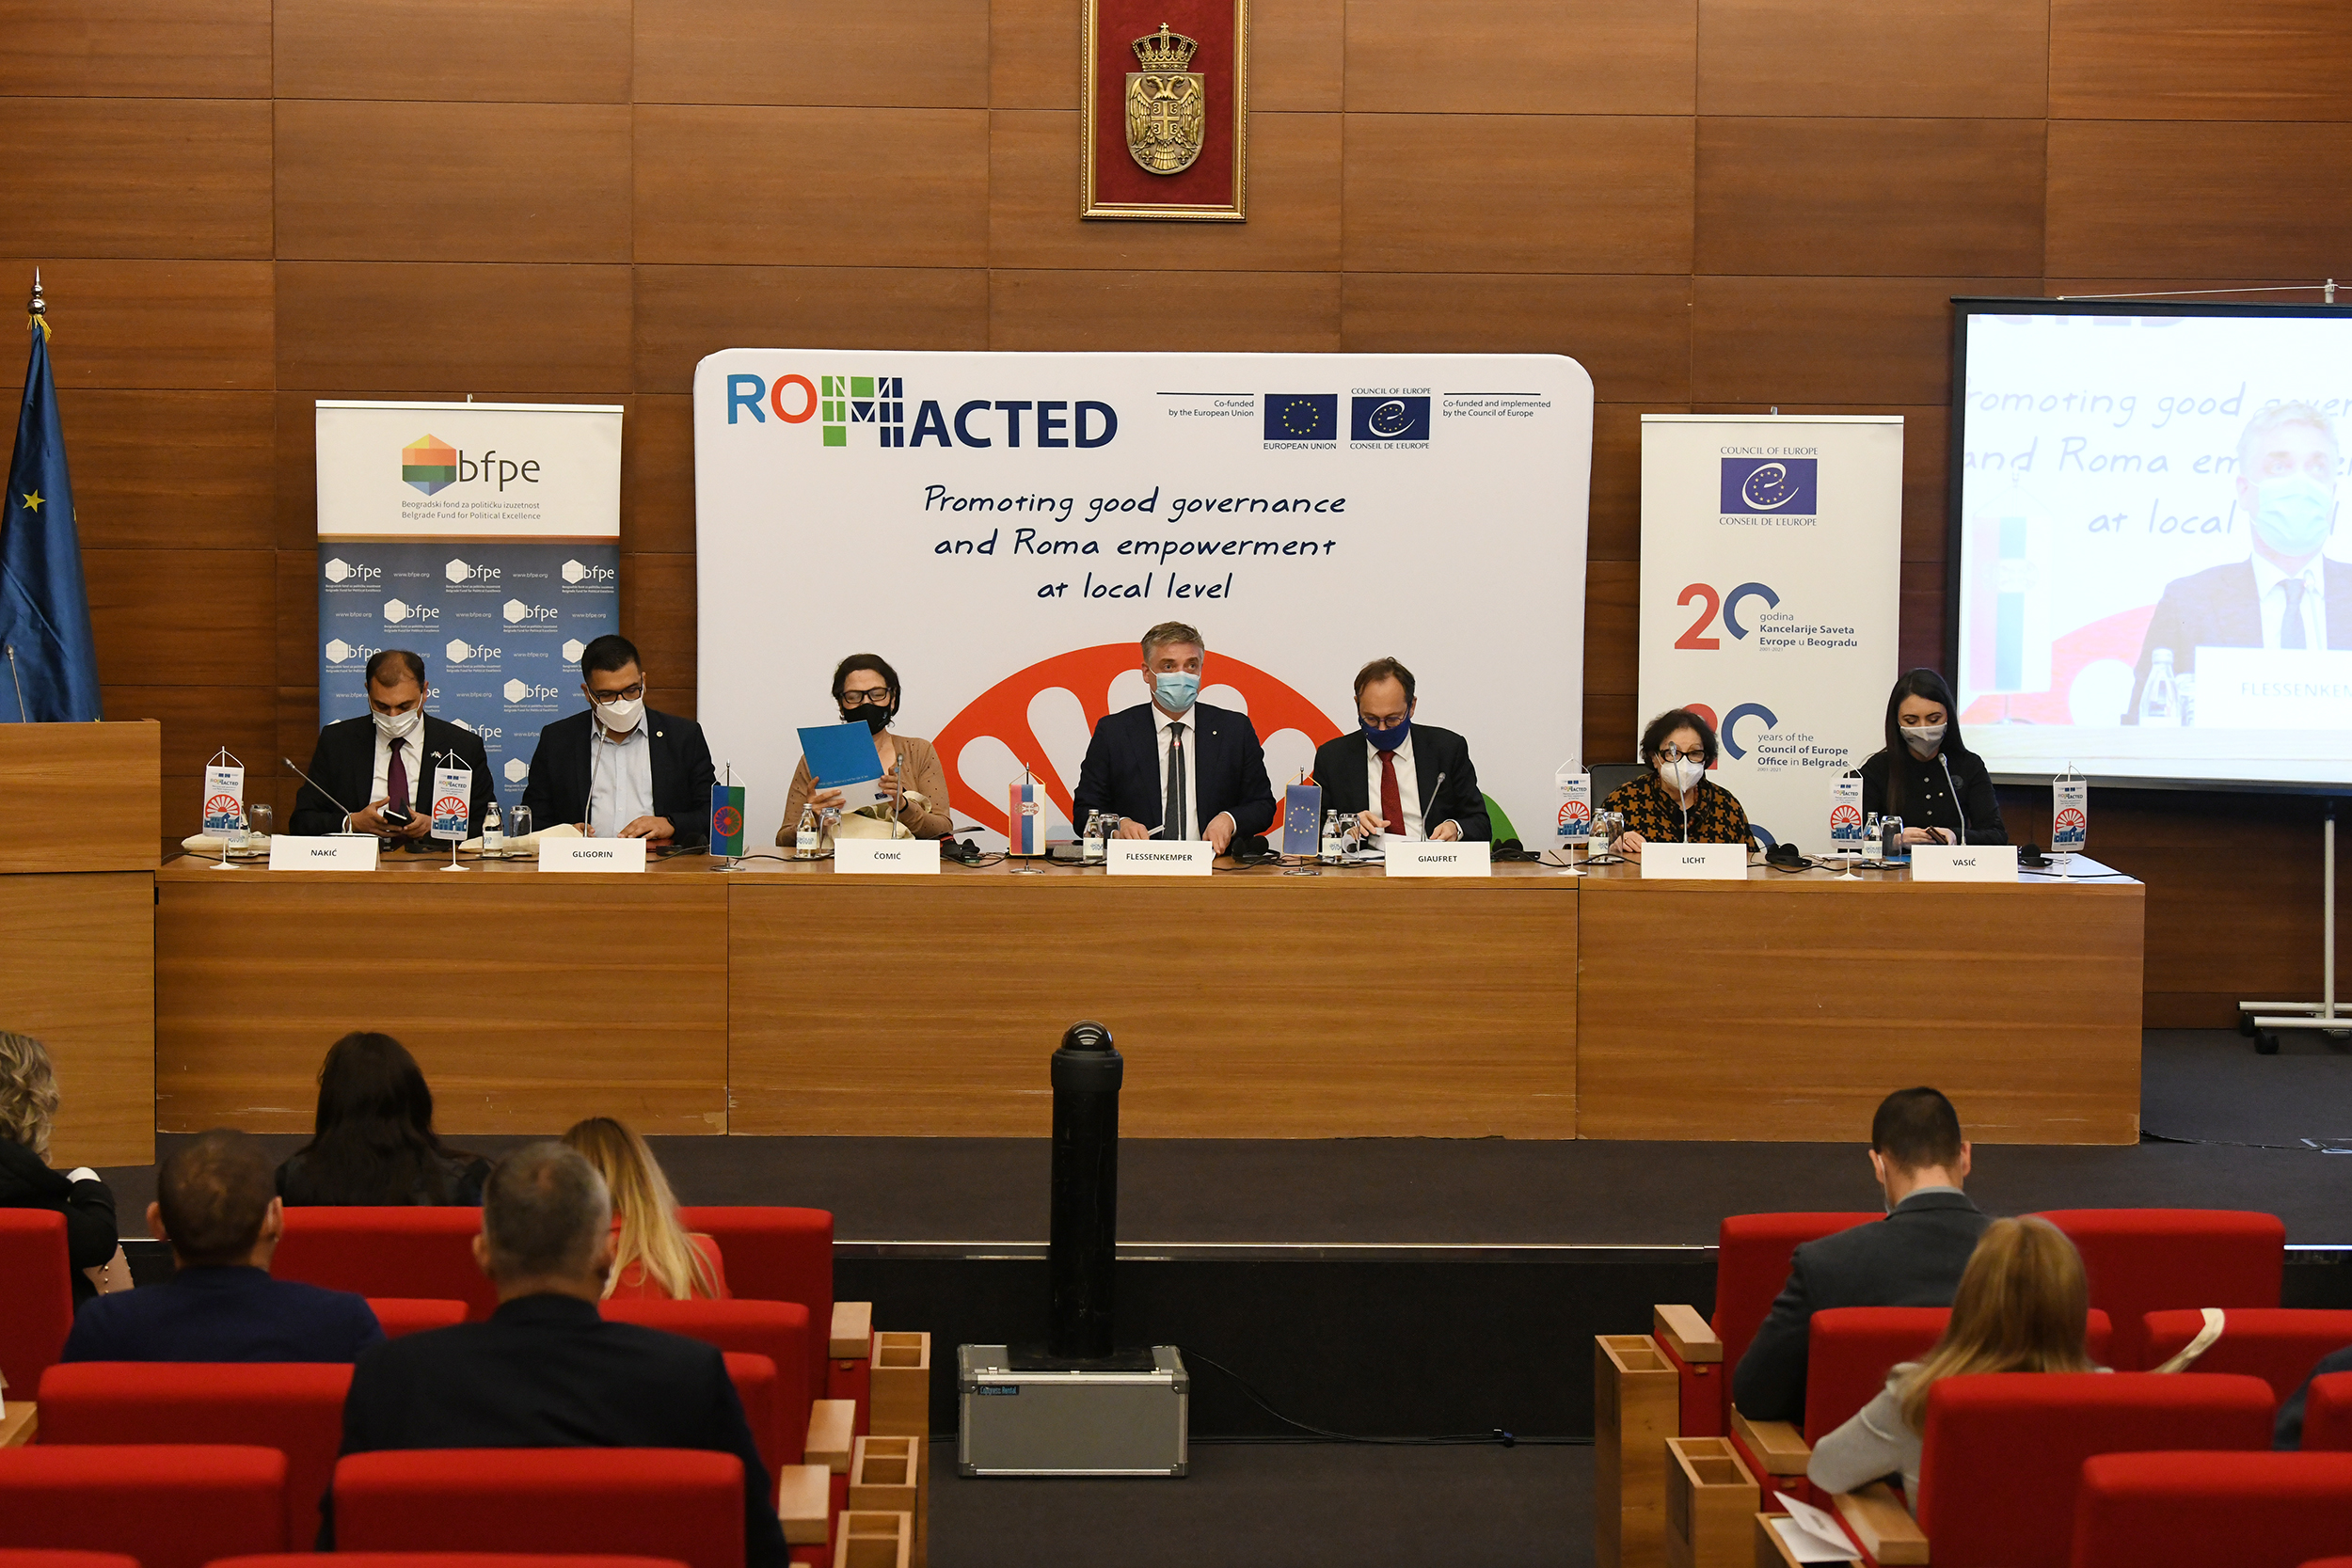 Zvanično lansiranje druge faze programa ROMACTED u Srbiji